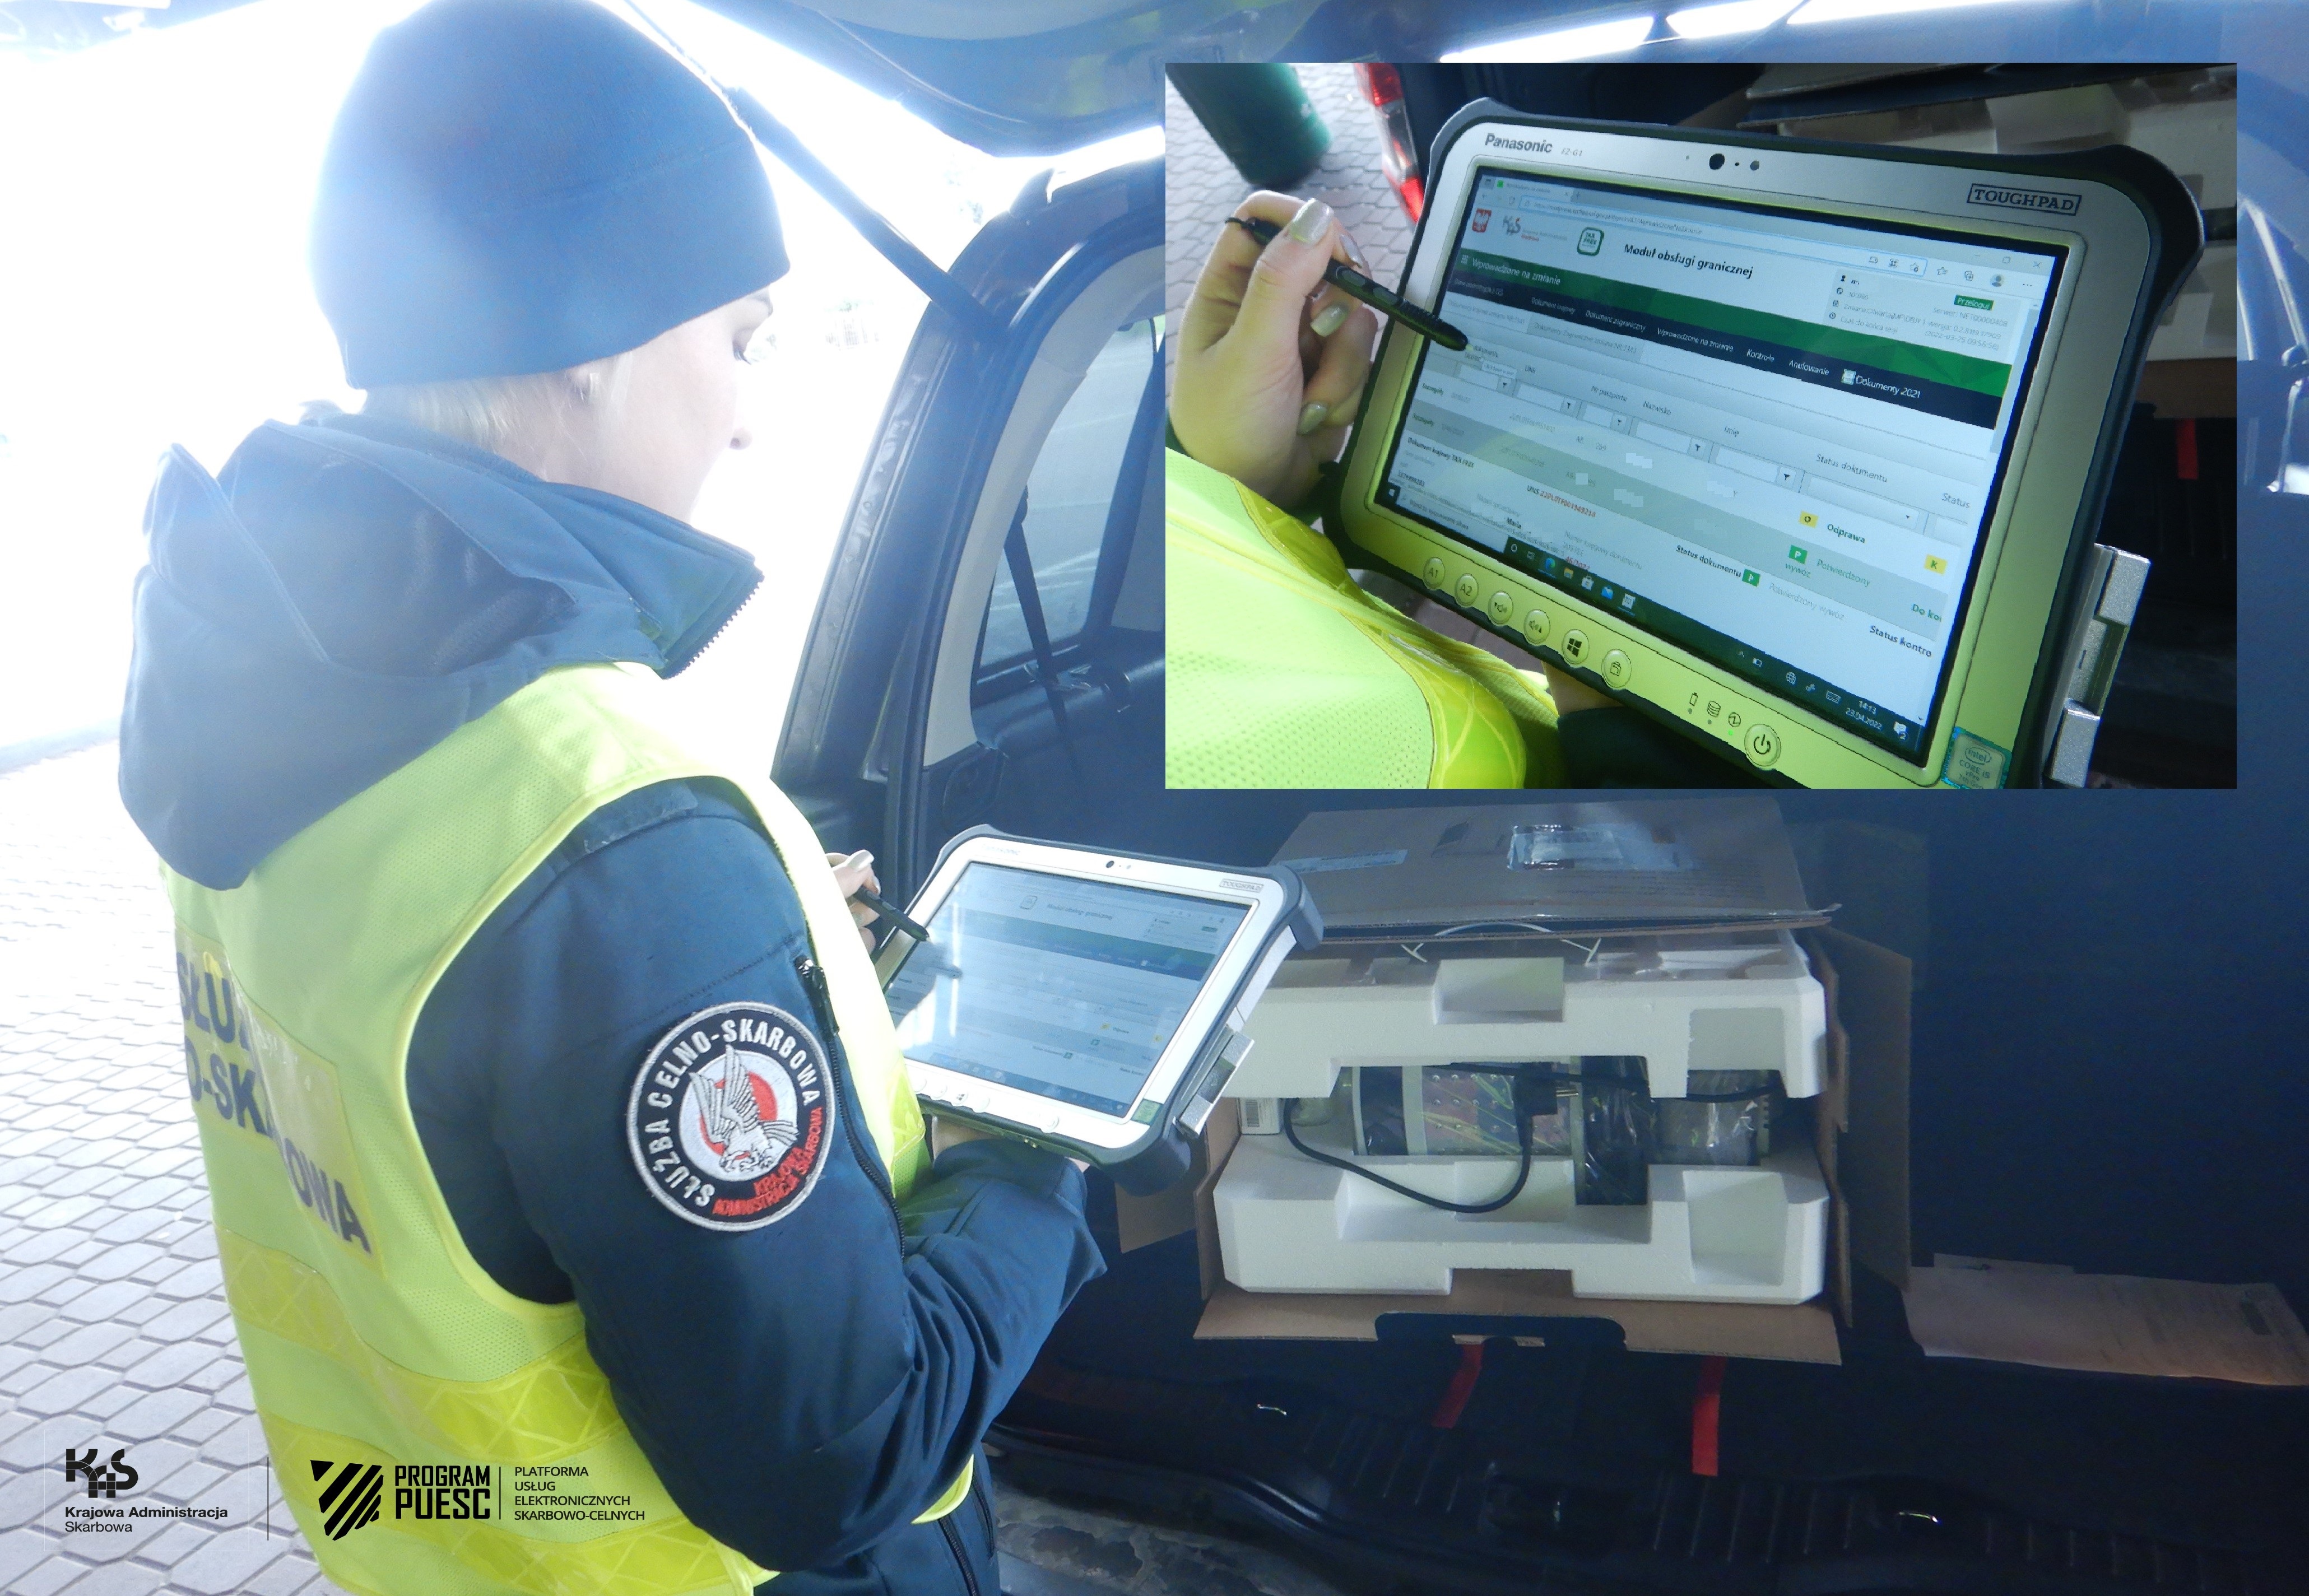 Funkcjonariuszka obsługująca tablet na przejściu granicznym, w tle widać samochód z otwartym bagażnikiem i otwartym kartonem w środku.